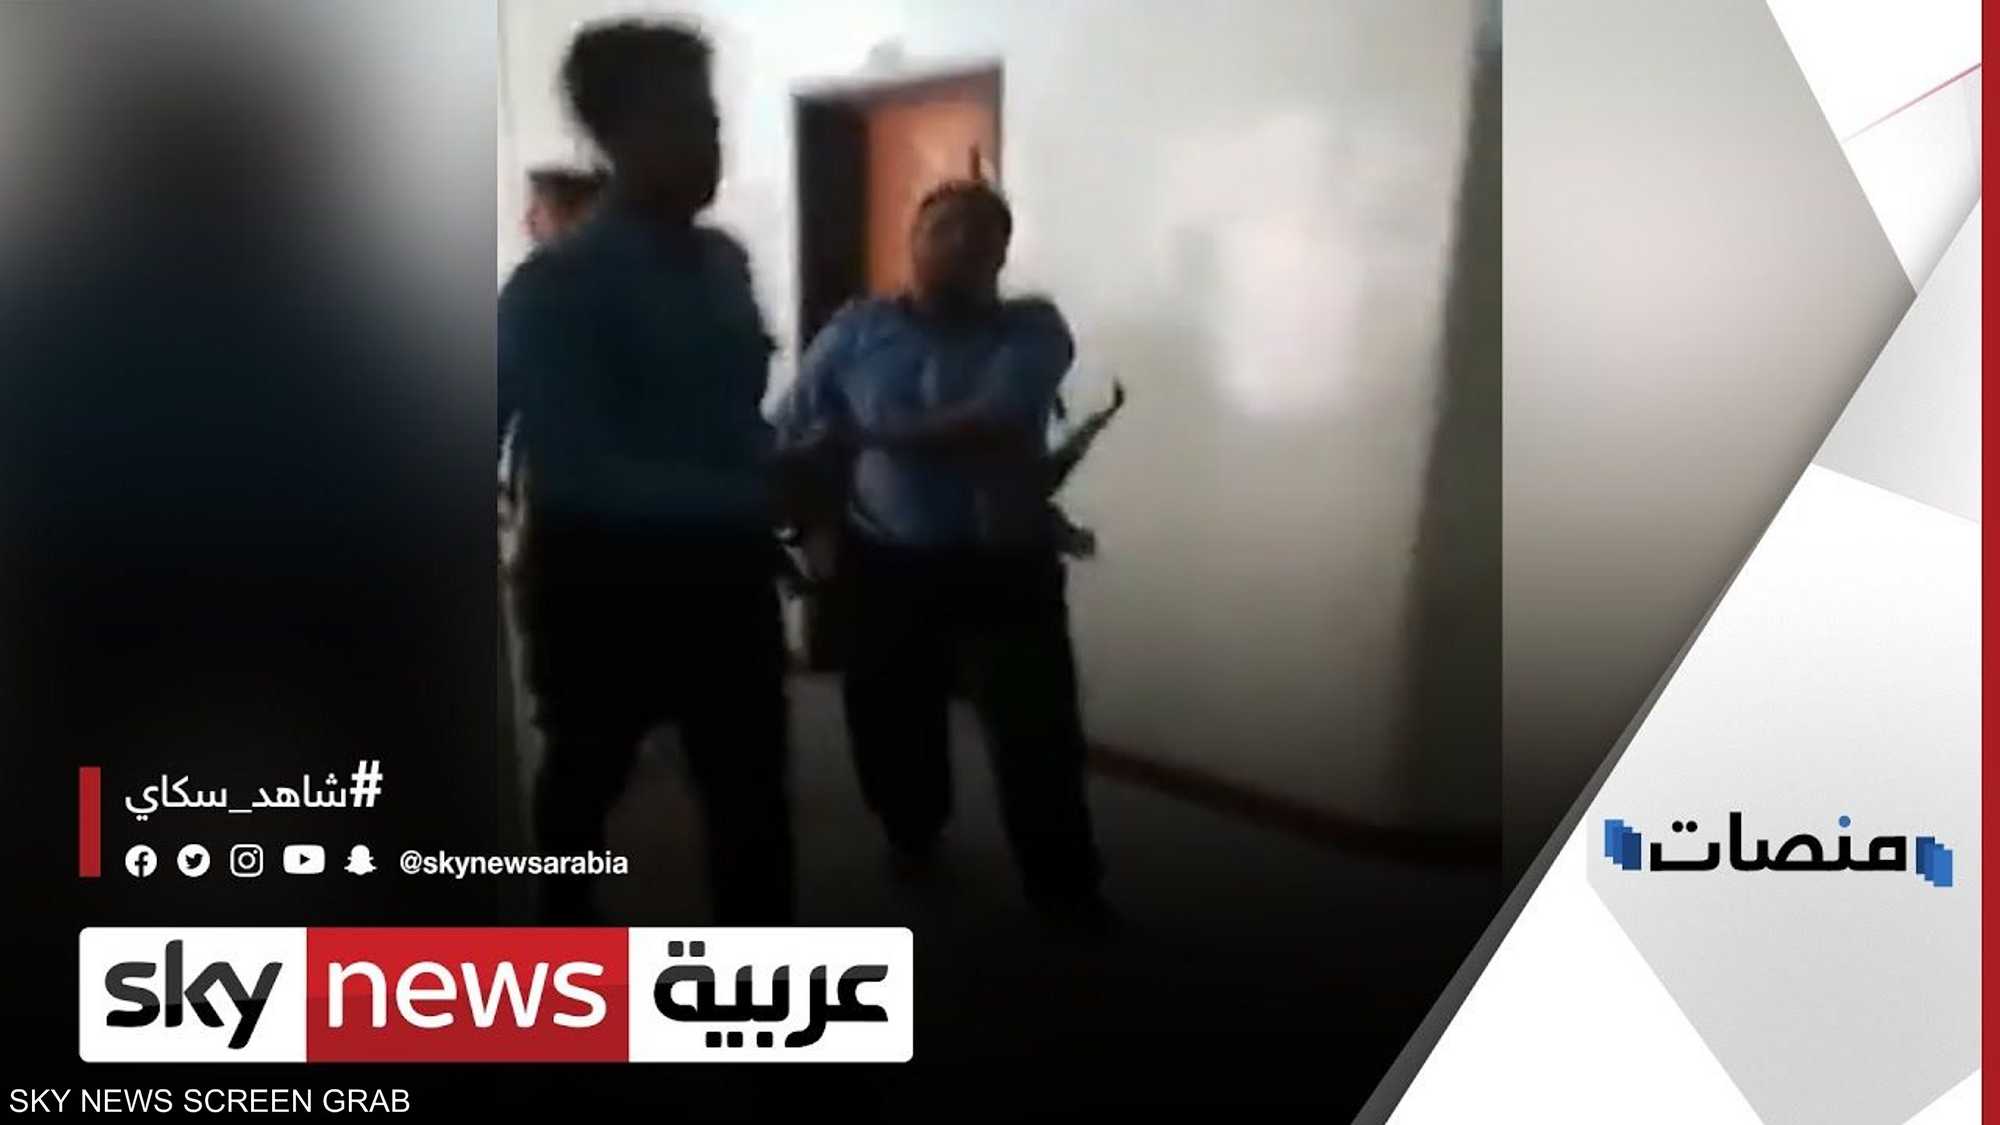 فيديو اقتحام جامعة صنعاء يثير غضبا وسط طلاب اليمن